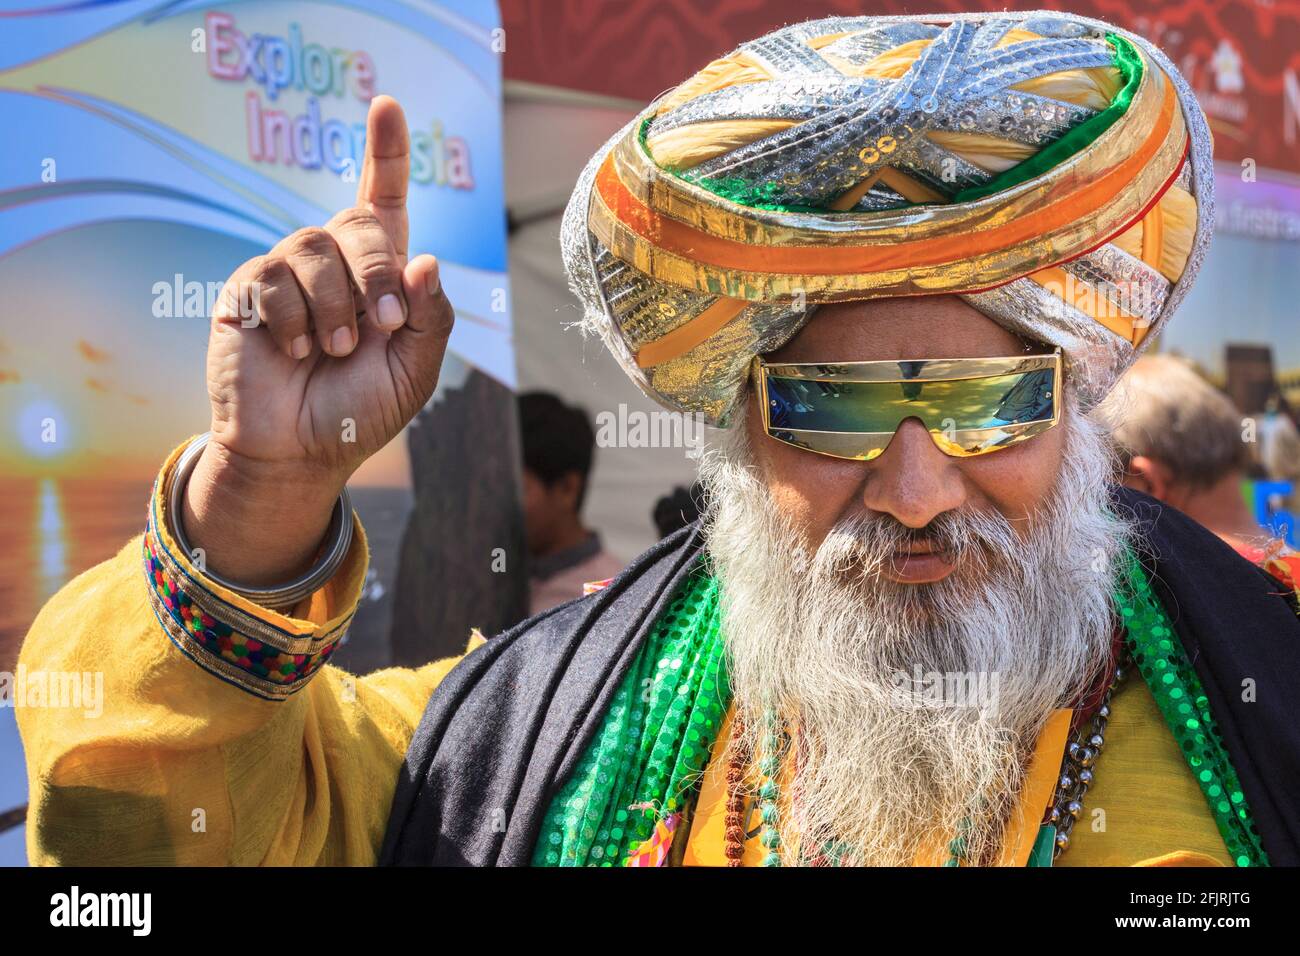 Der punjabische Sikh-Mann Kala Kala in farbenfrohem Dastar-Turban und lebendiger traditioneller Kleidung posiert lächelnd auf einem asiatischen Festival auf dem Trafalgar Square in London Stockfoto